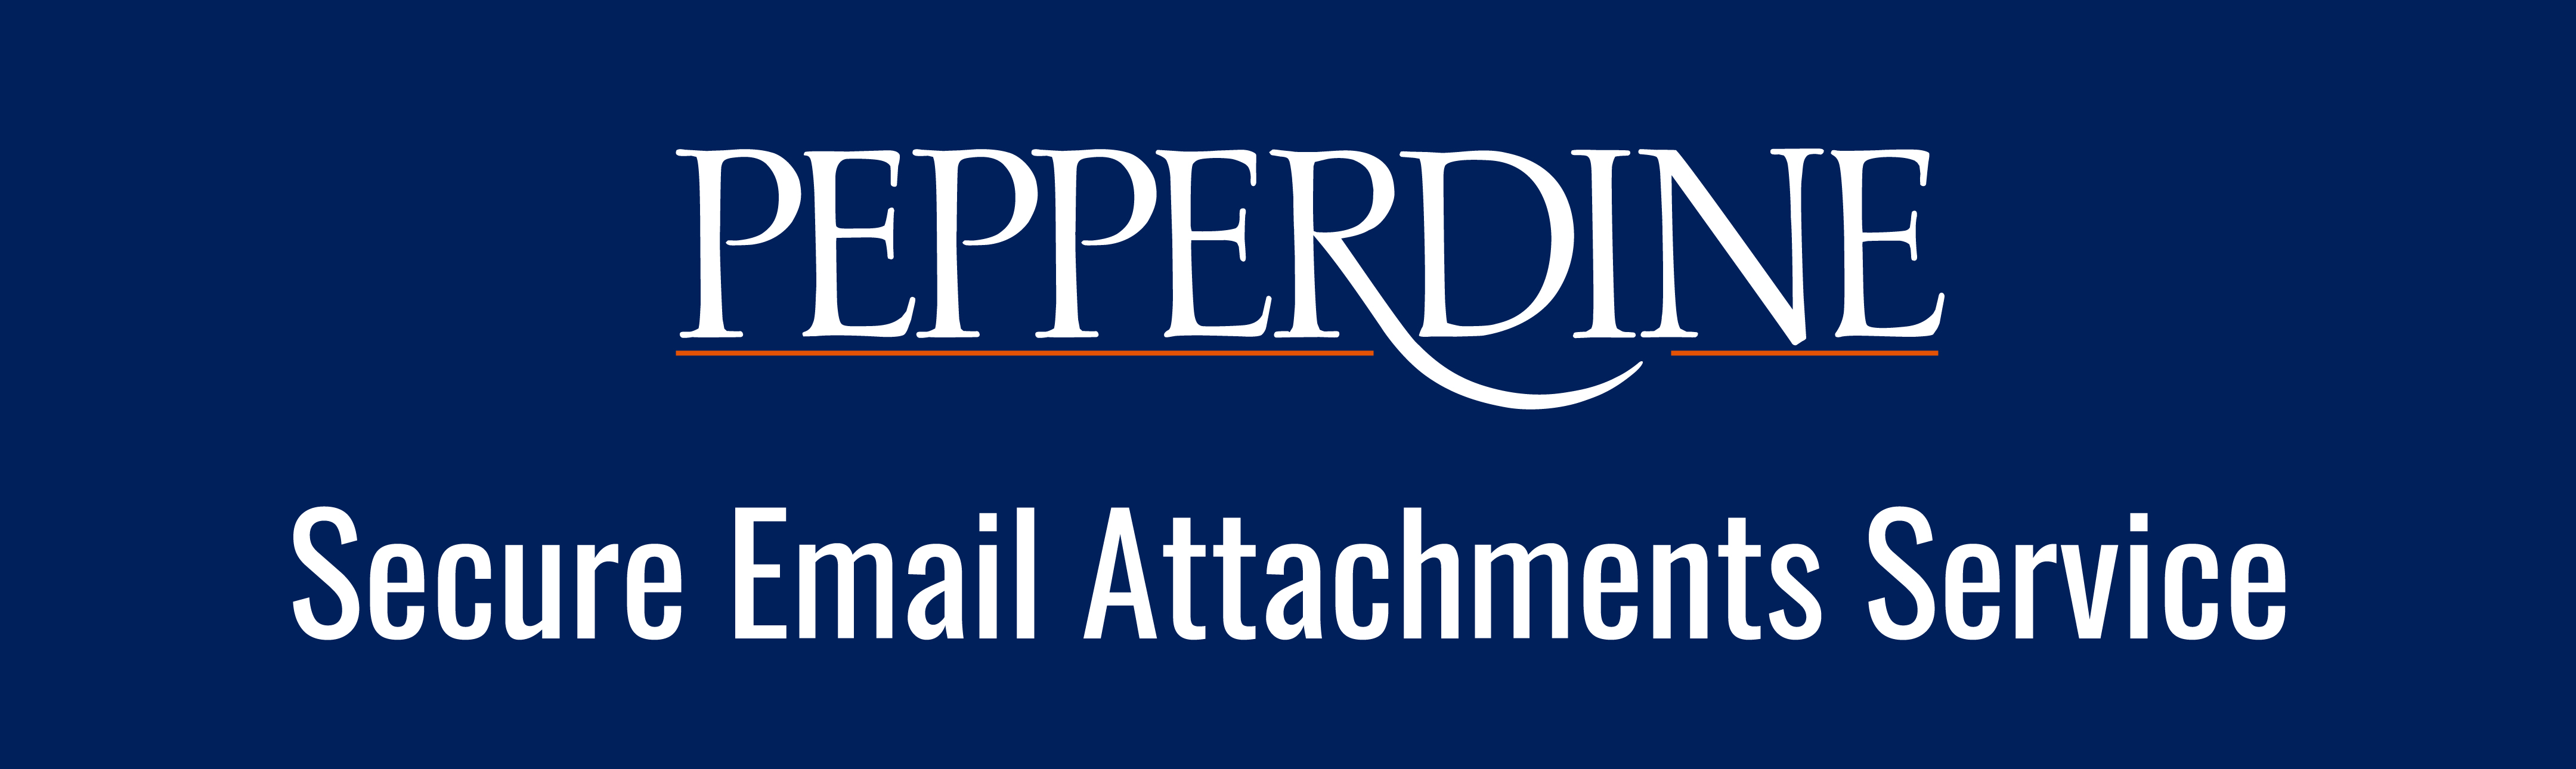 Pepperdine Secure Email Attachments Login Screen